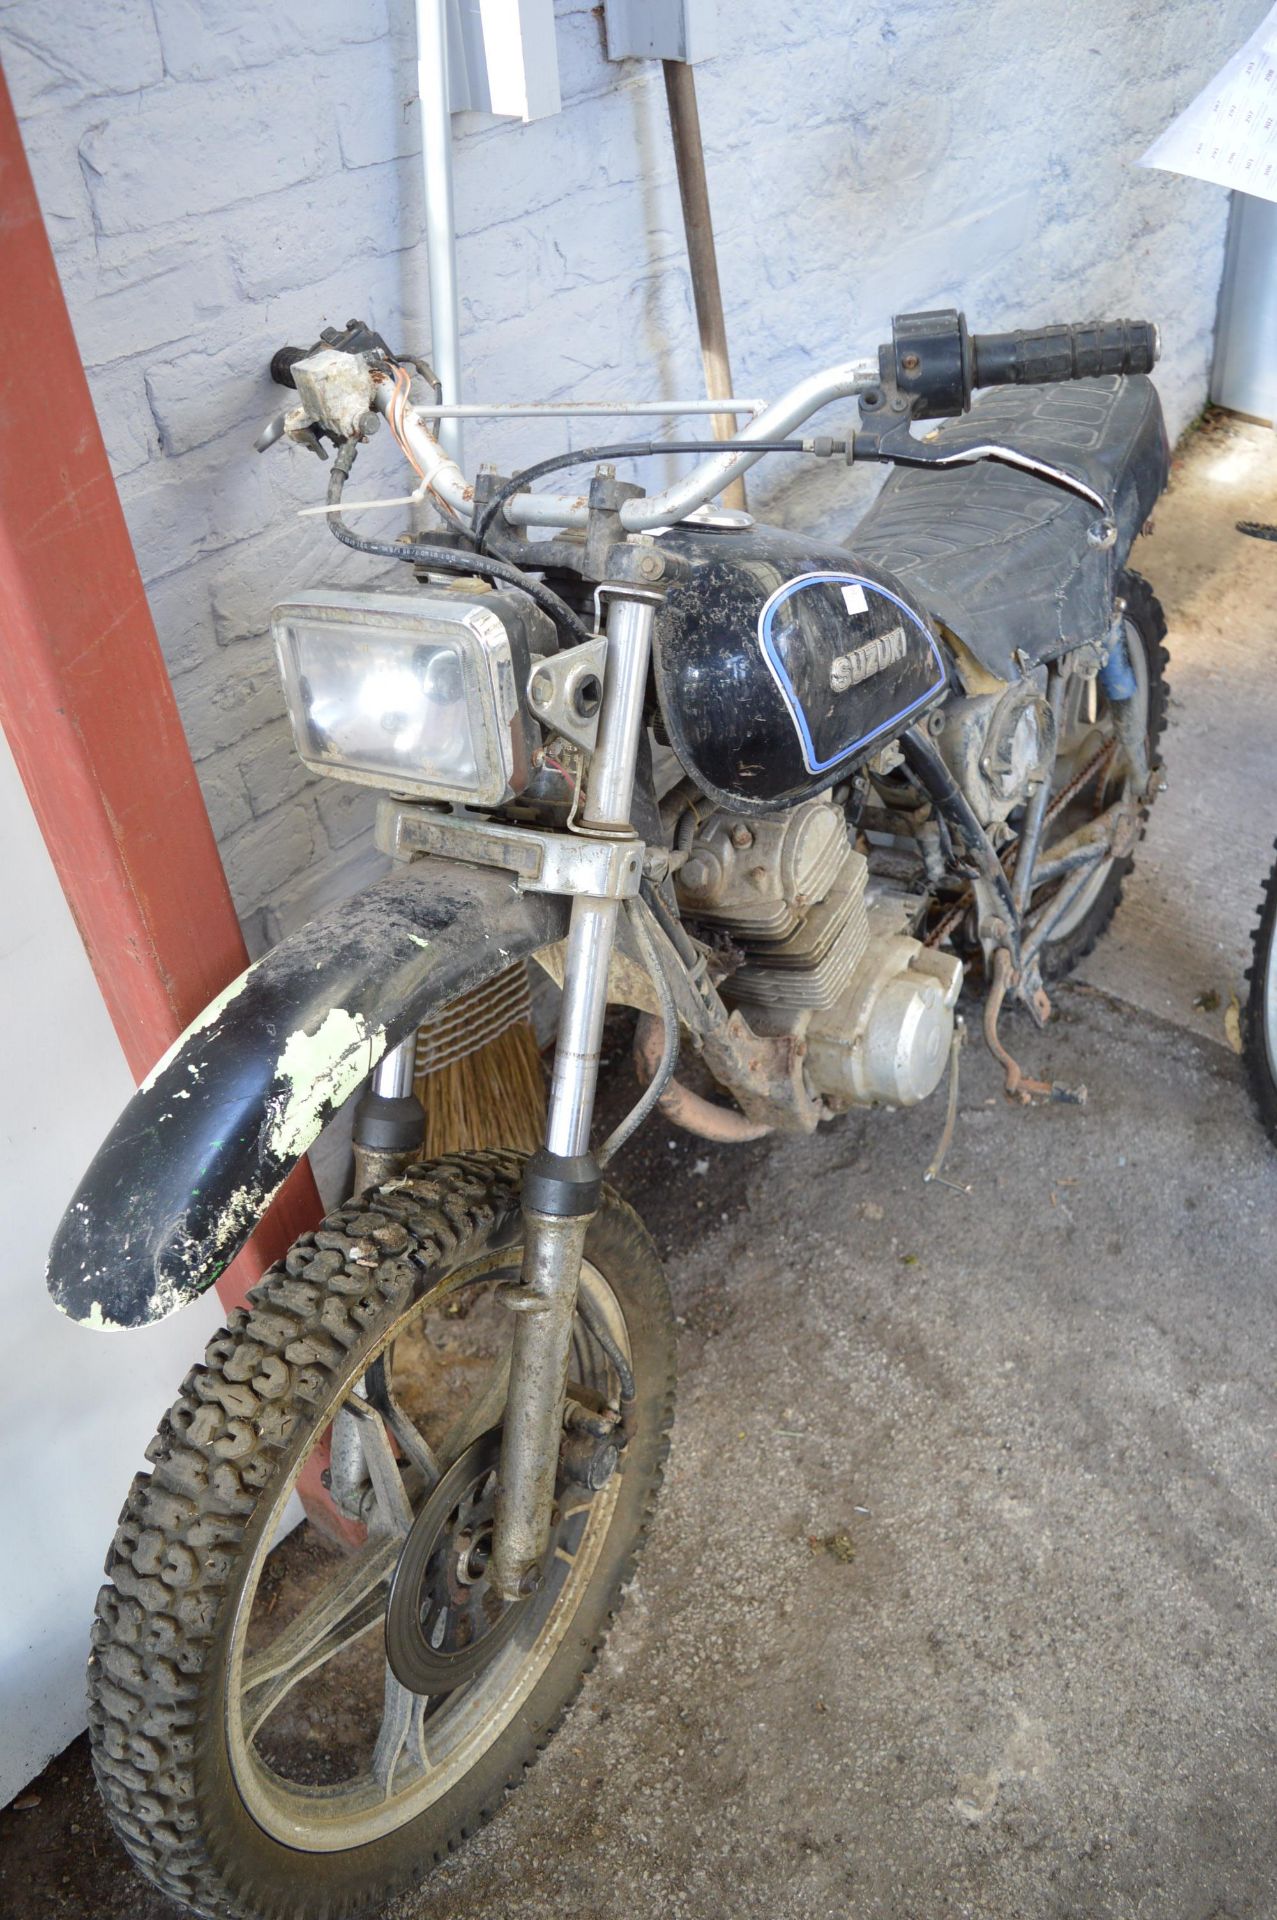 Suzuki Offroad Motorbike (requires restoration) - Image 3 of 3